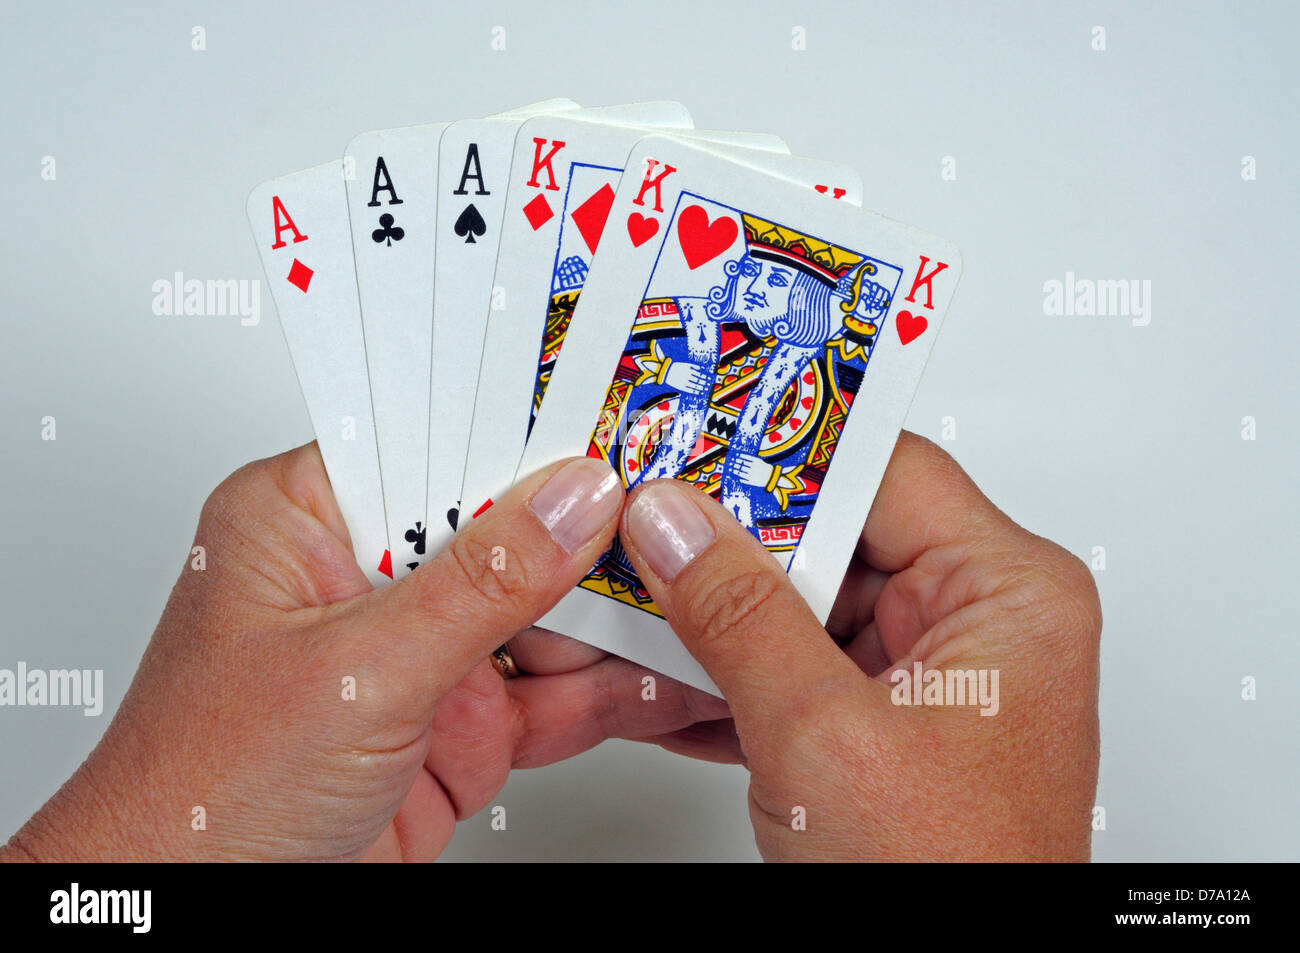 Full house poker hand. Stock Photo